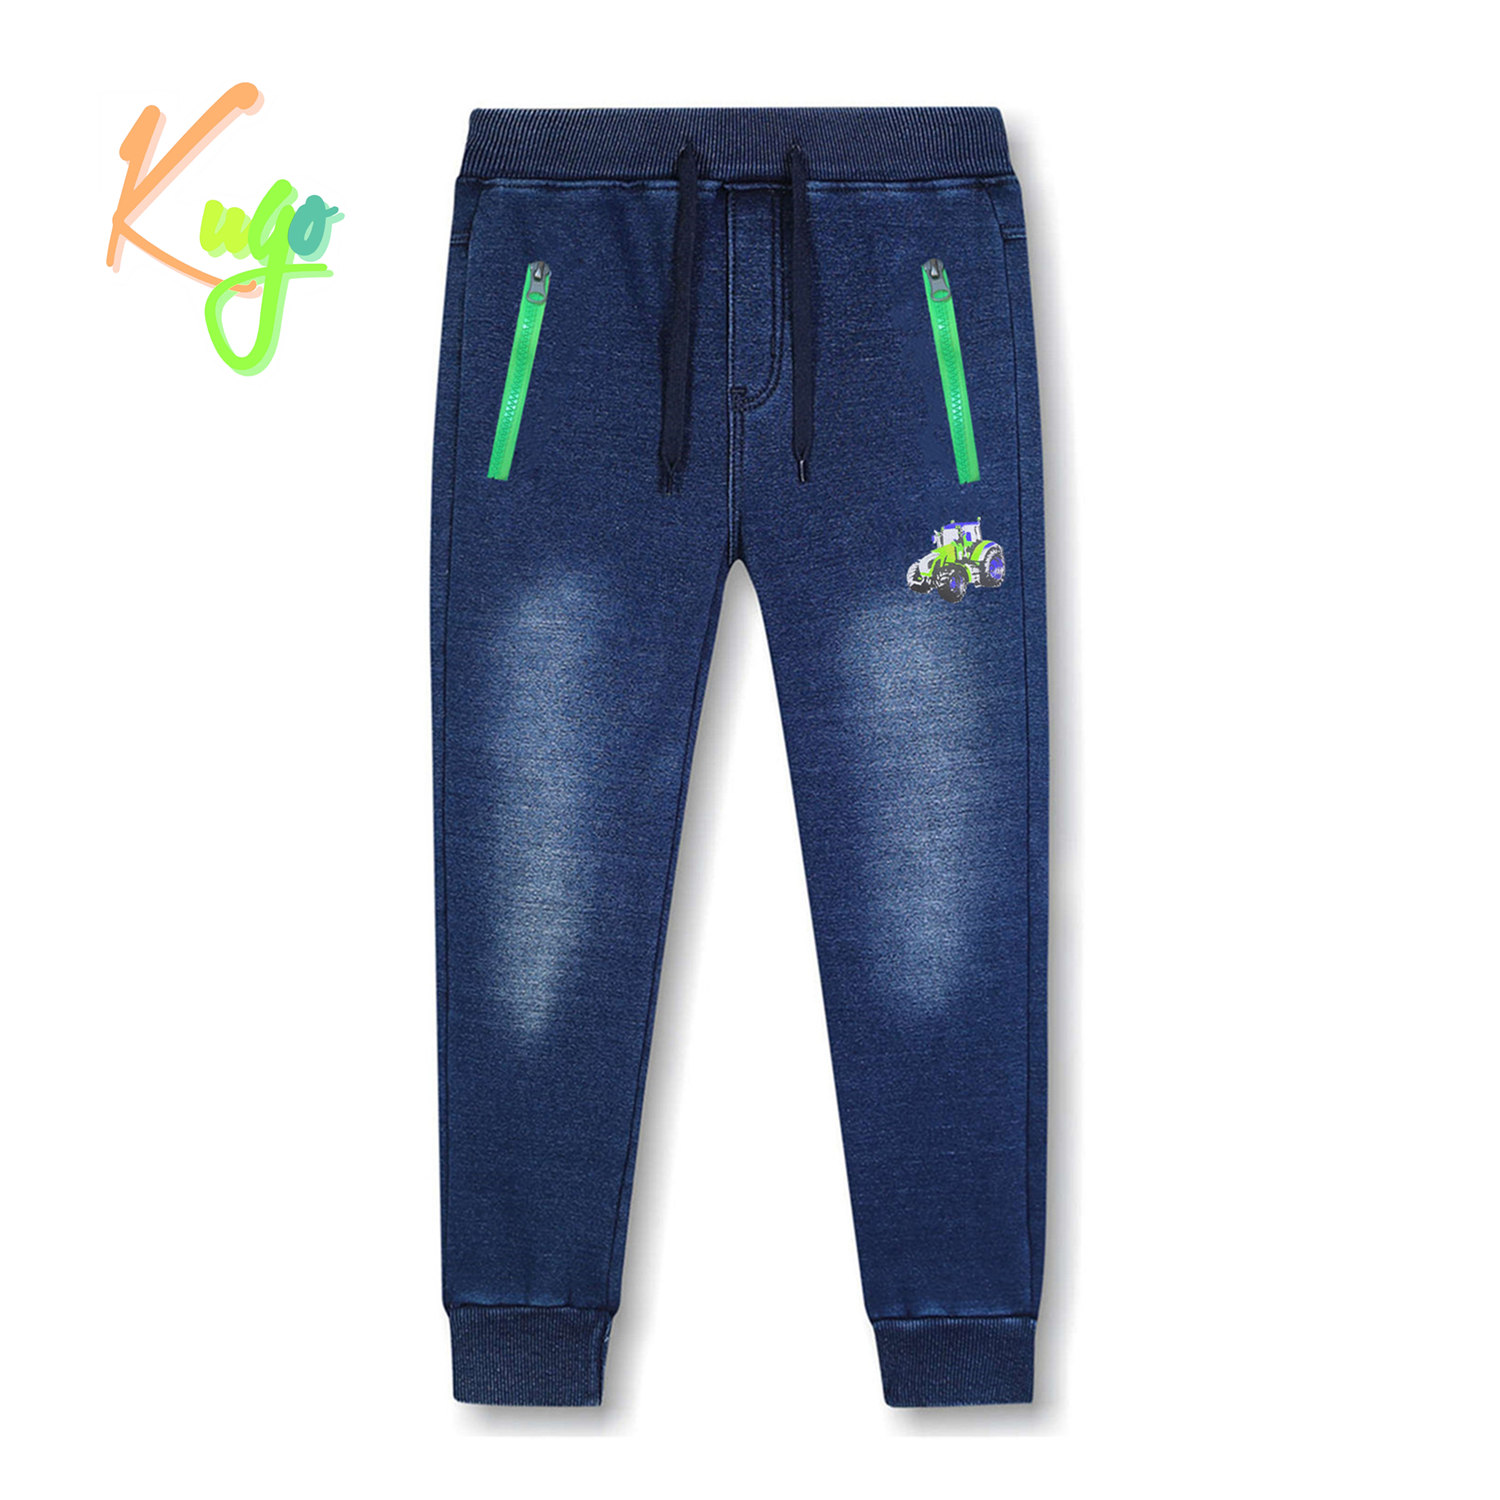 Chlapecké riflové kalhoty/ tepláky, zateplené - KUGO CK0923, modrá Barva: Modrá, Velikost: 110